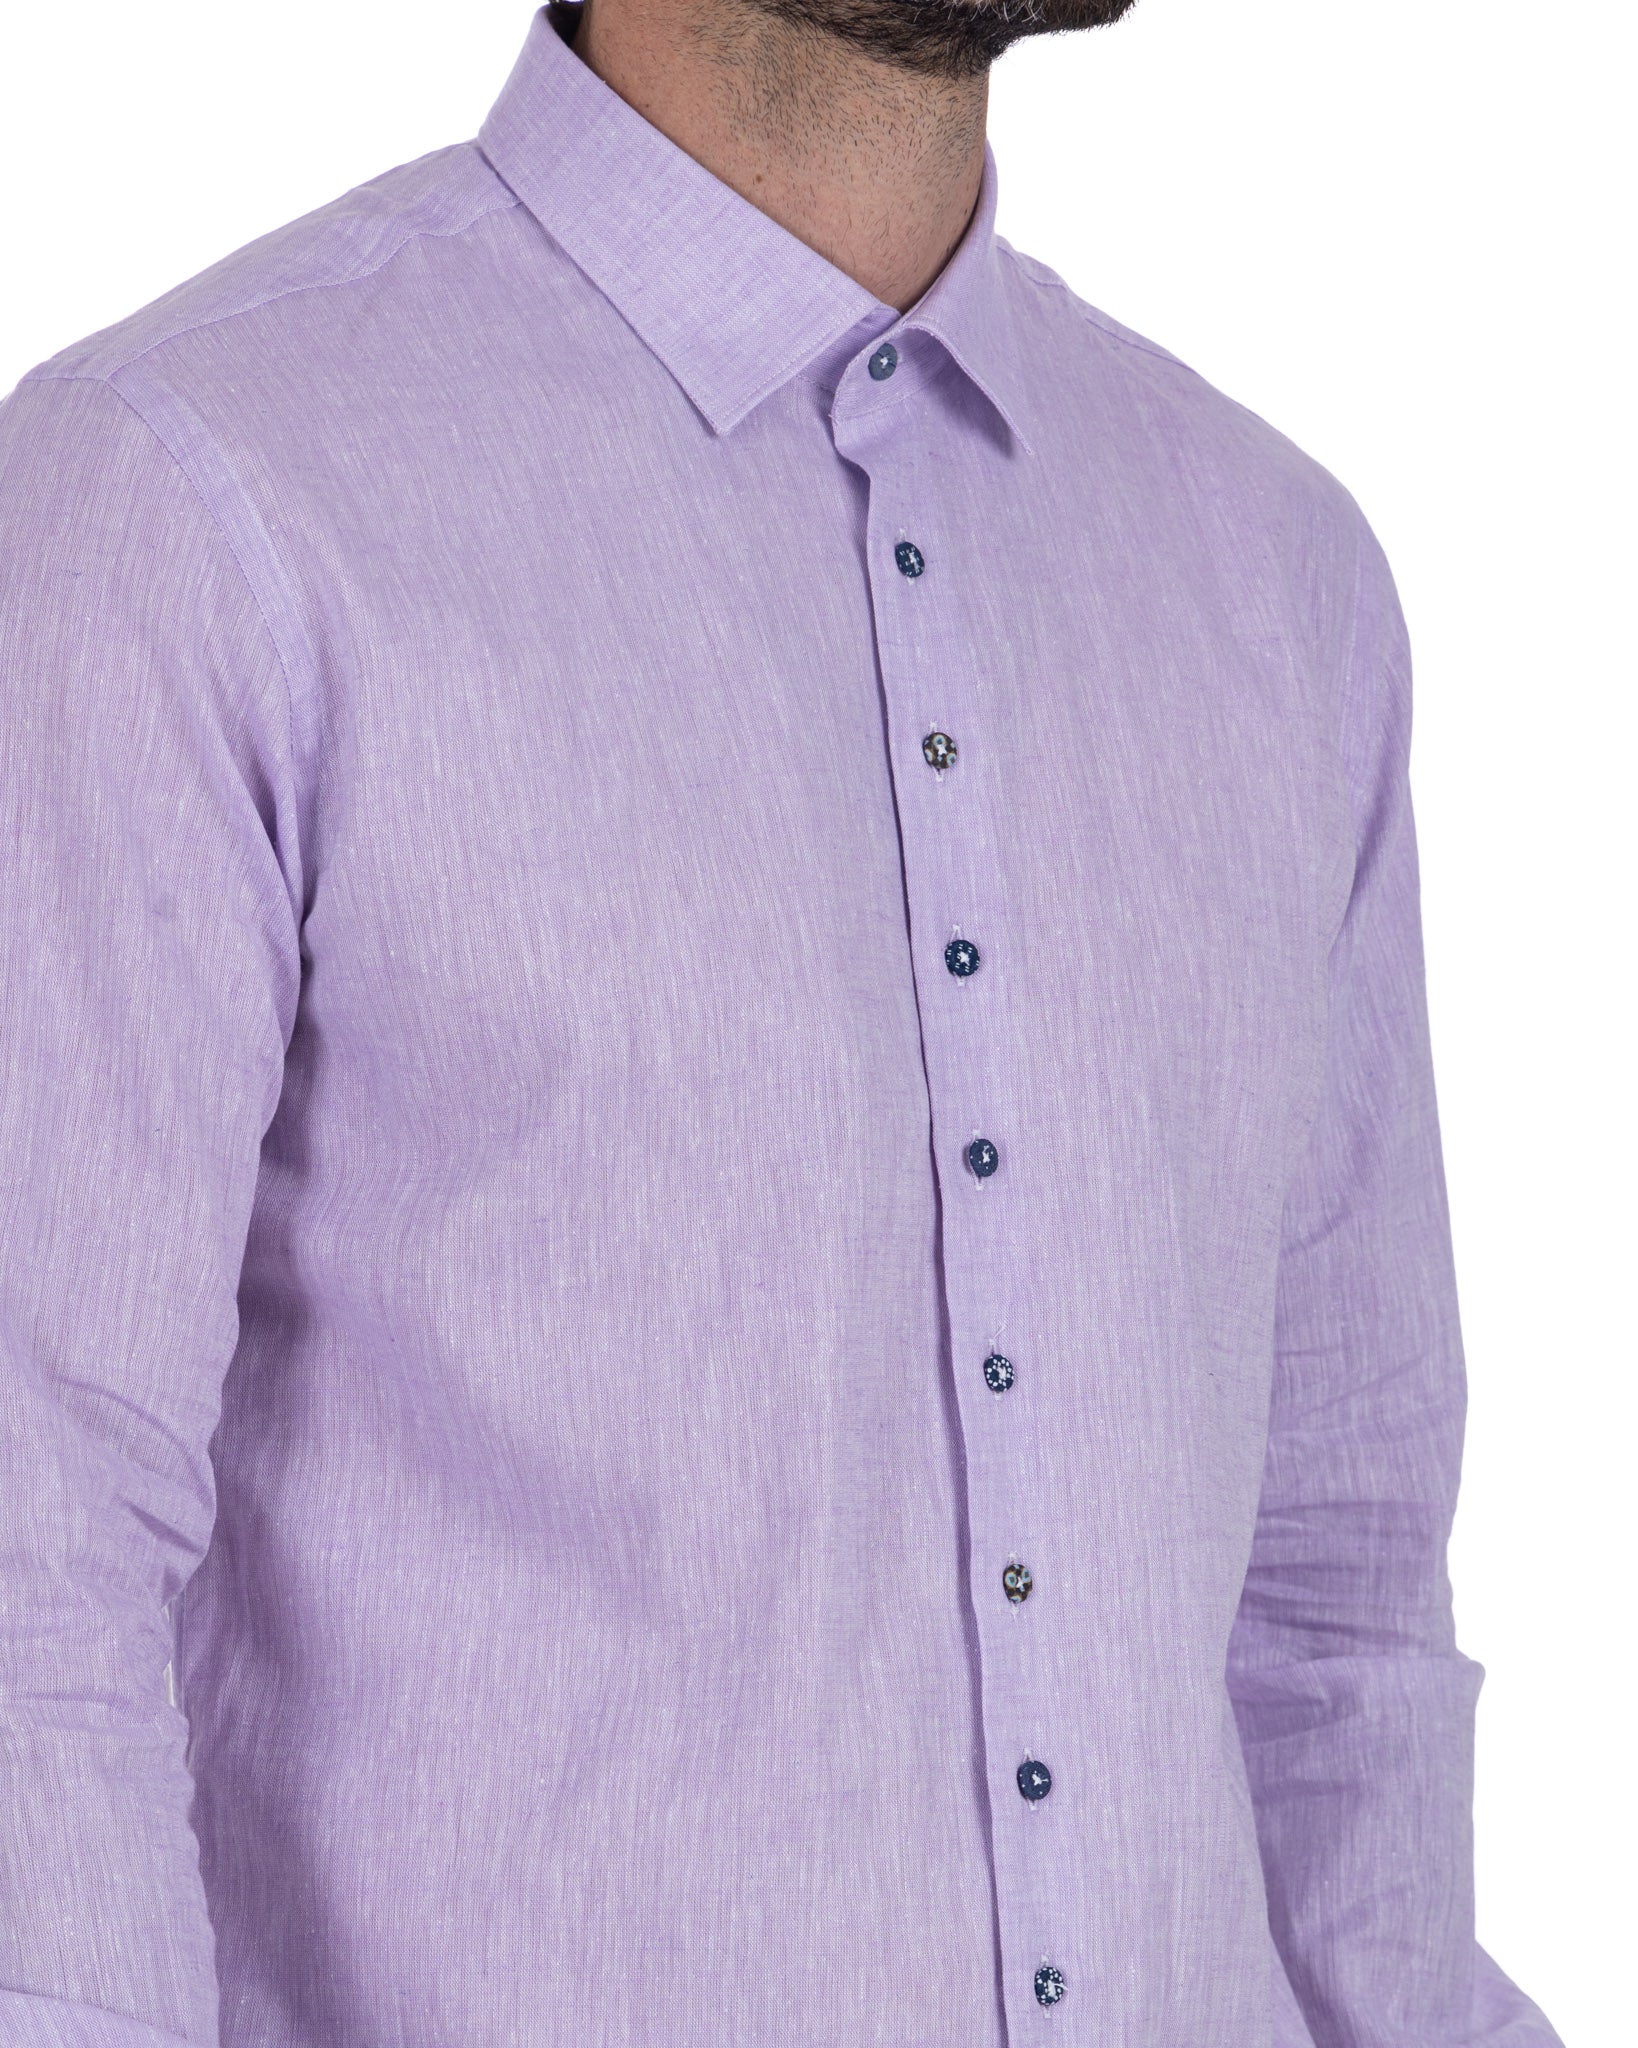 Praiano - camicia francese in lino lilla